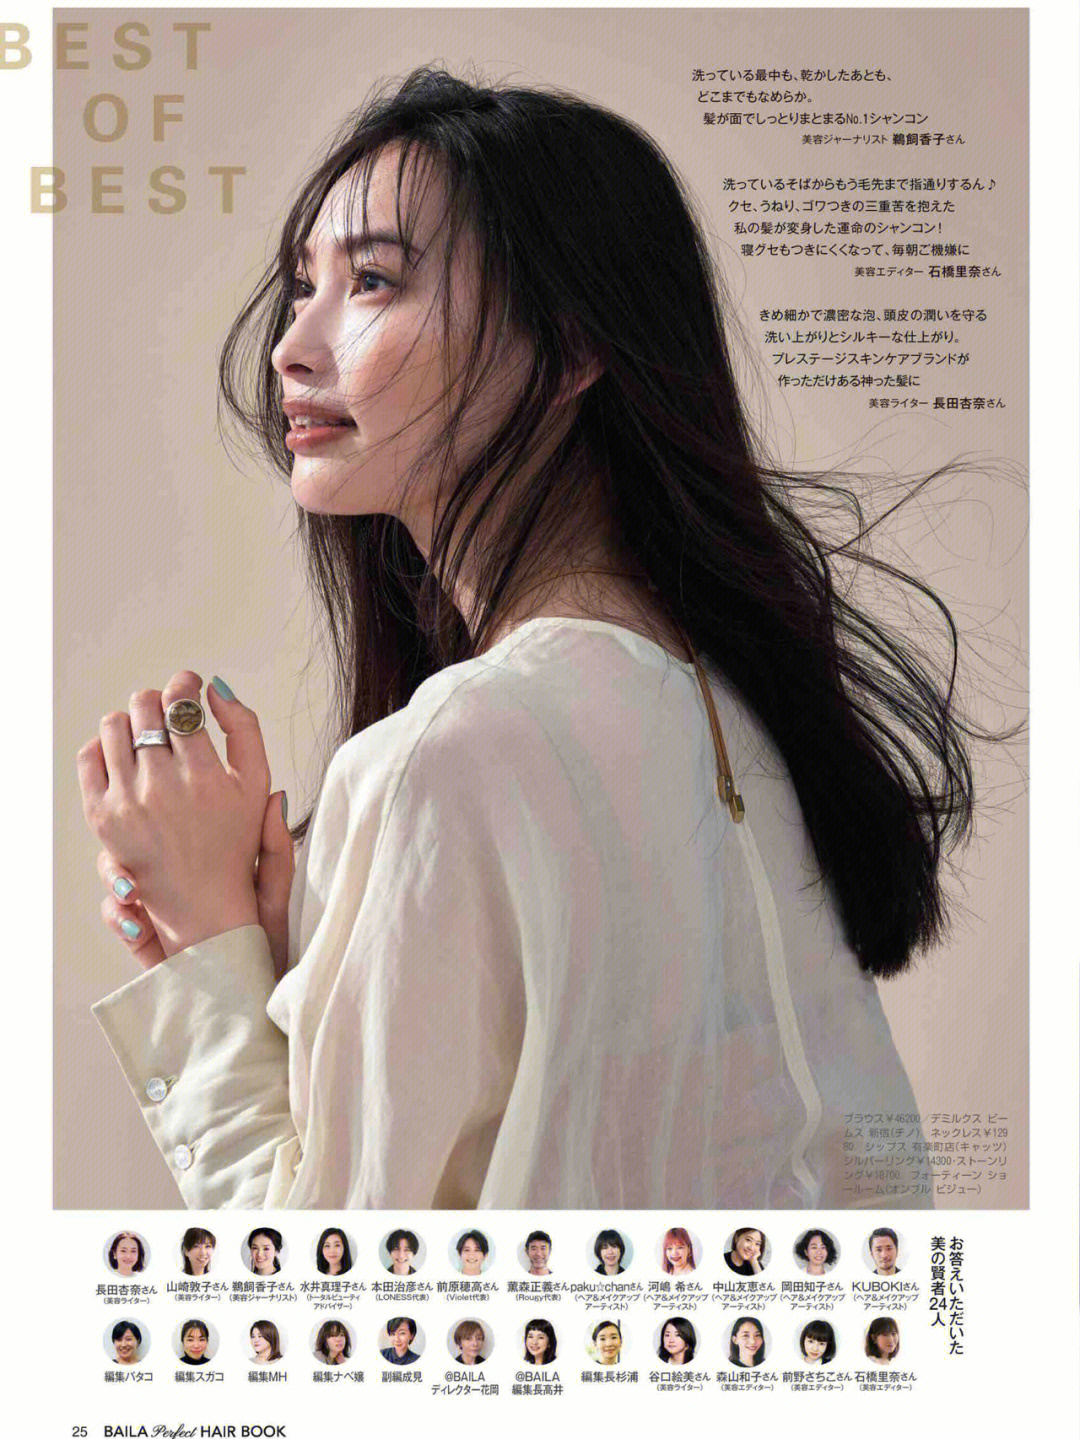 日系发型baila224最新杂志时尚发型